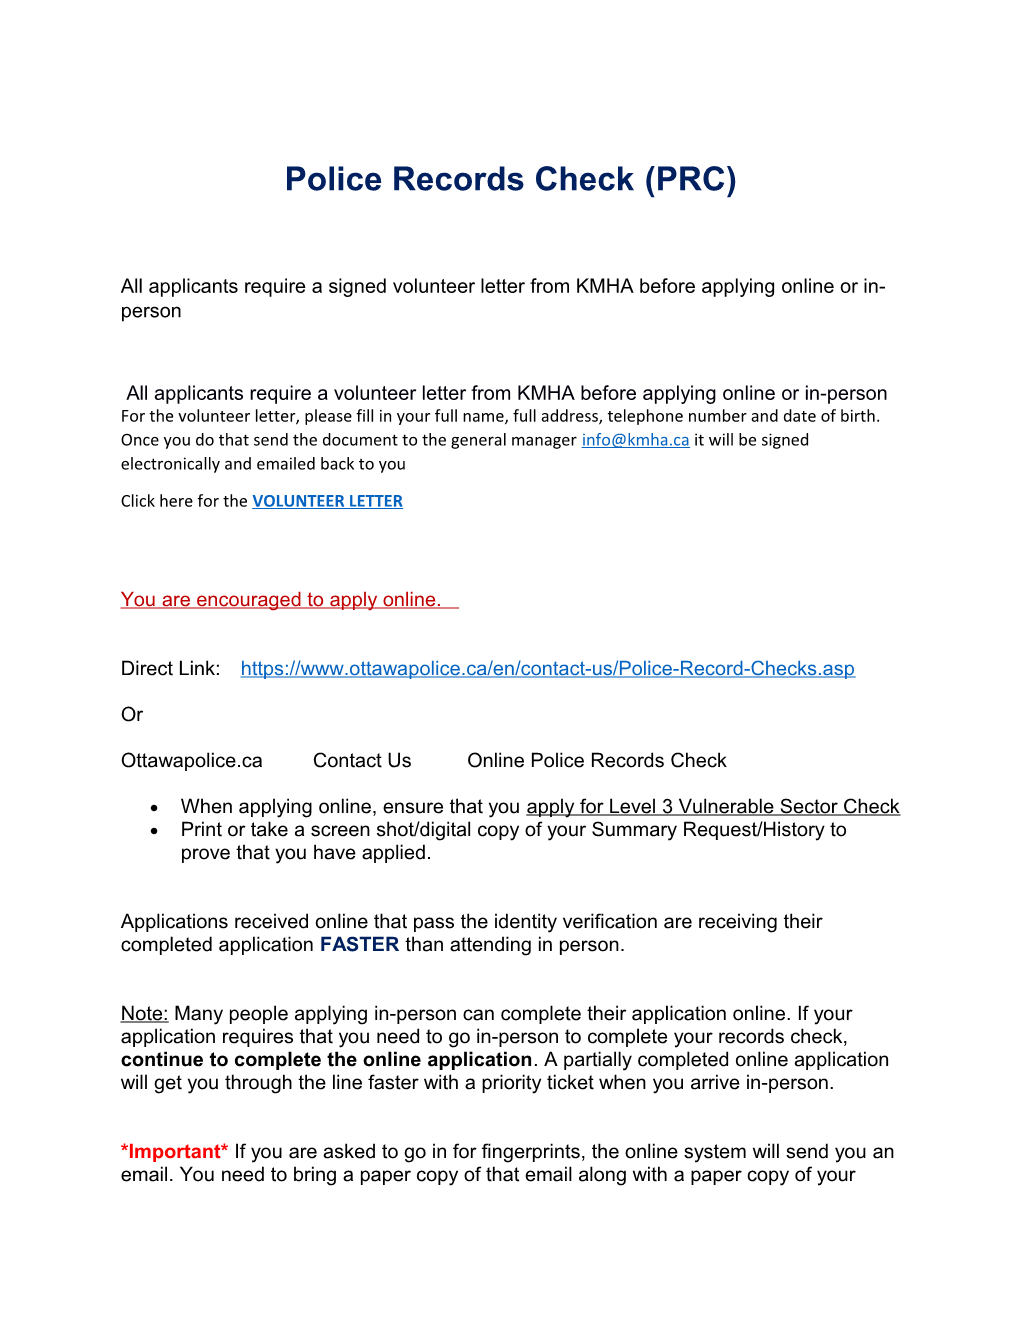 Police Records Check(PRC)